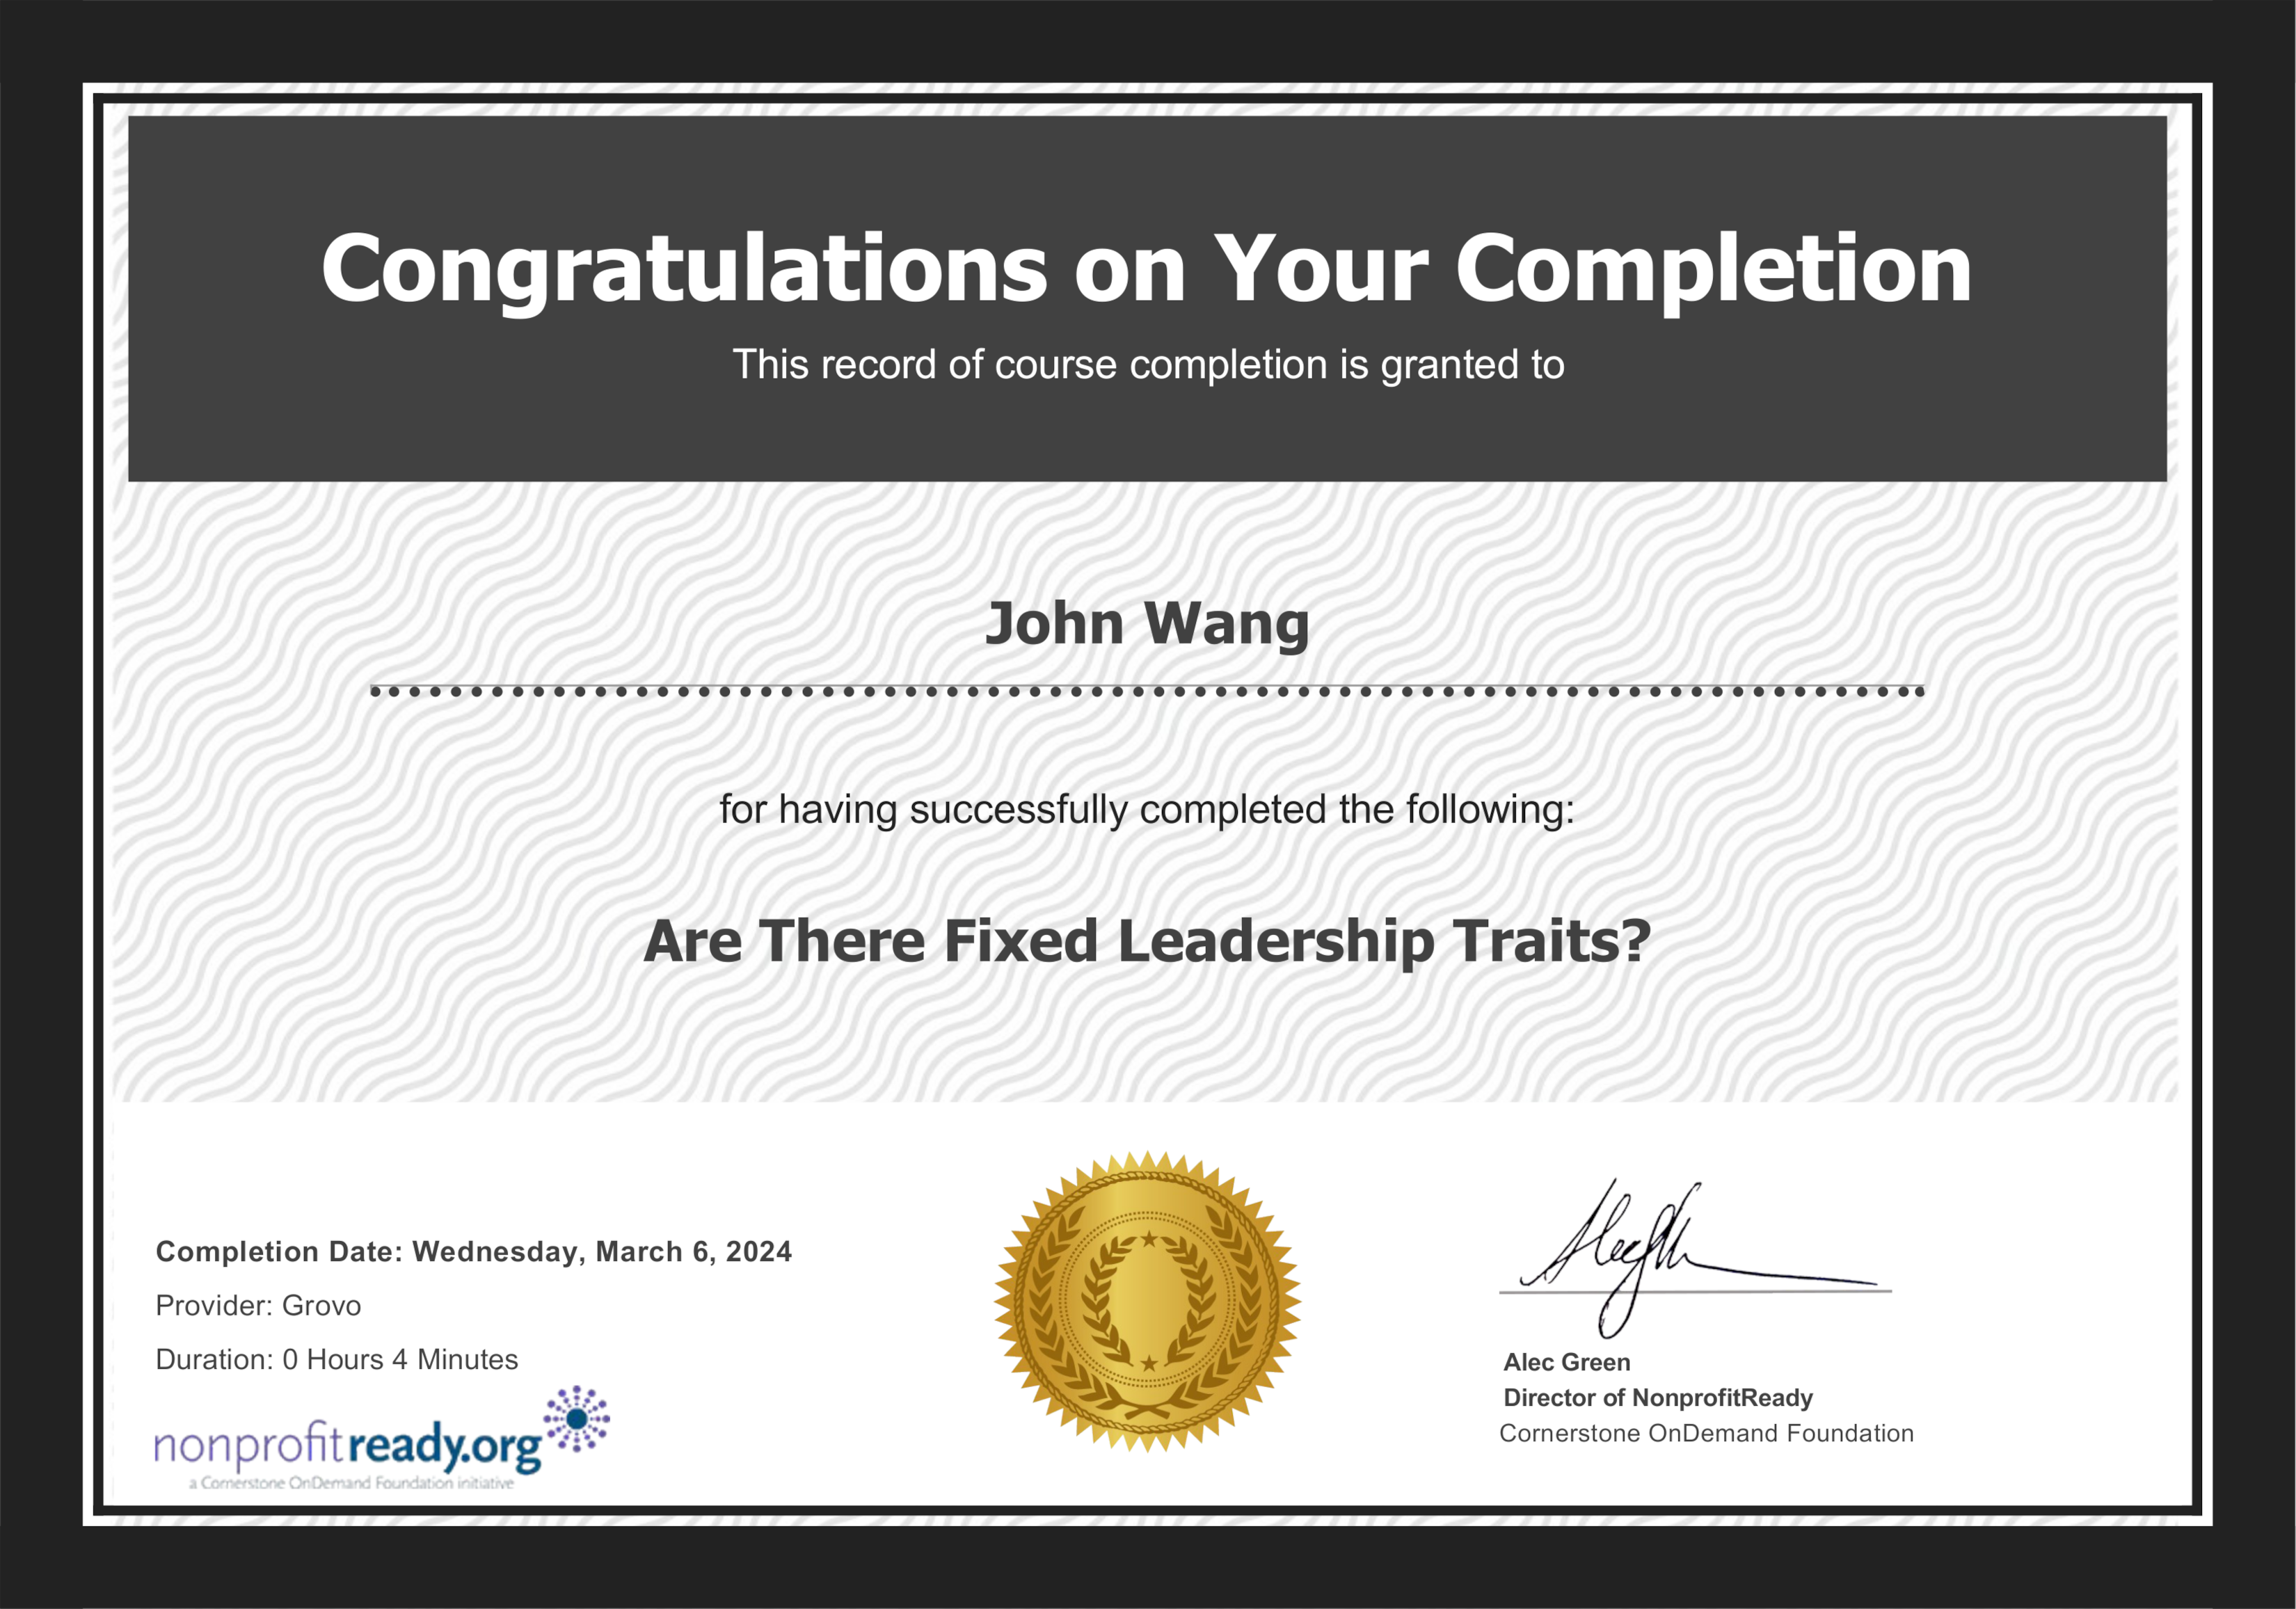 John's Are There Fixed Leadership Traits? from NonprofitReady